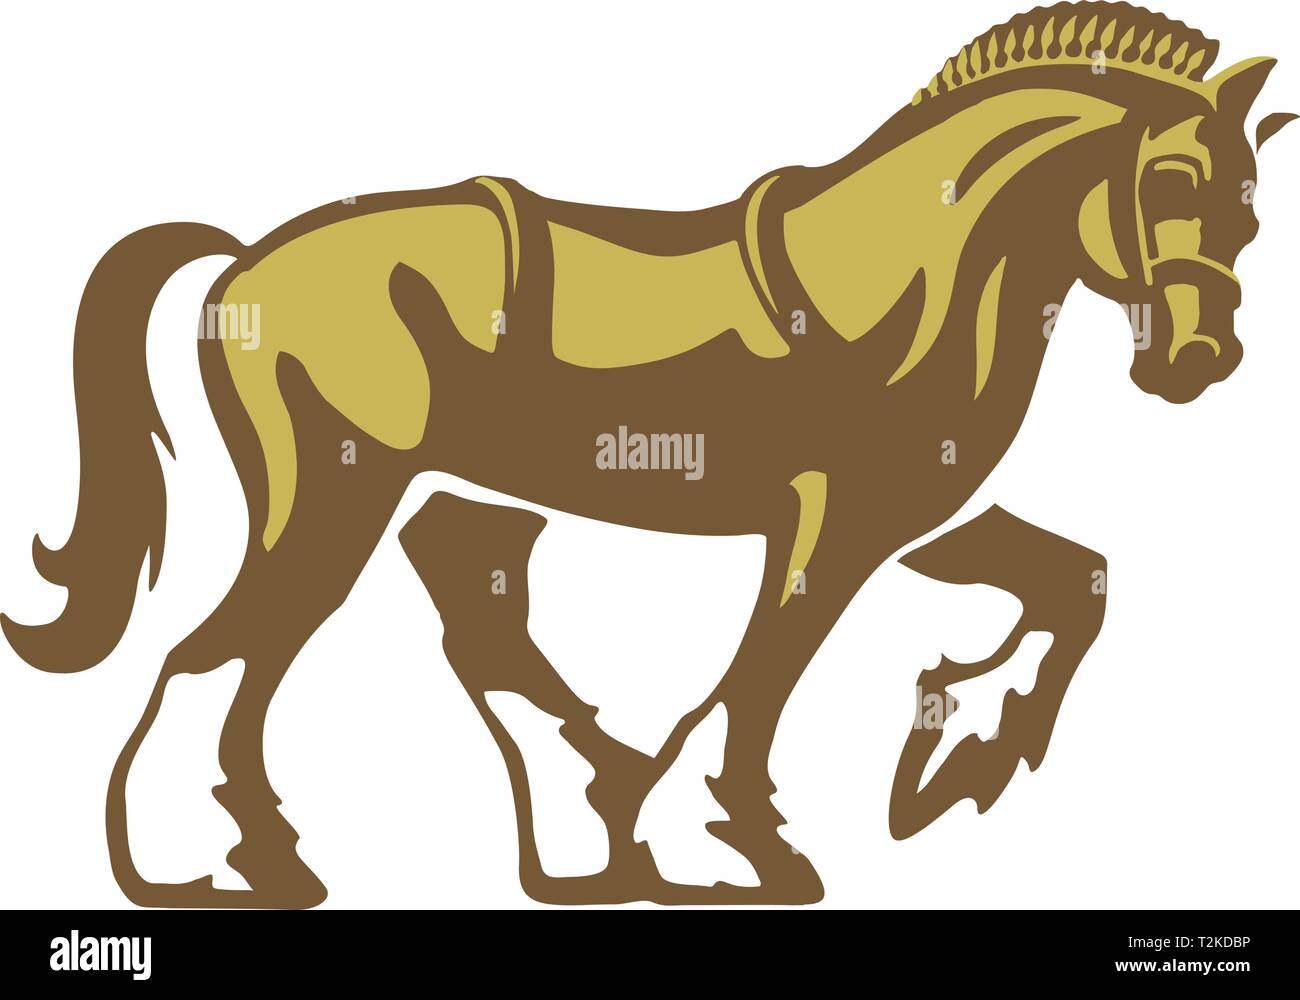 Shire Horse ou projet de cheval ou cheval lourd, logo vector illustration, entièrement ajustable et évolutive. Illustration de Vecteur